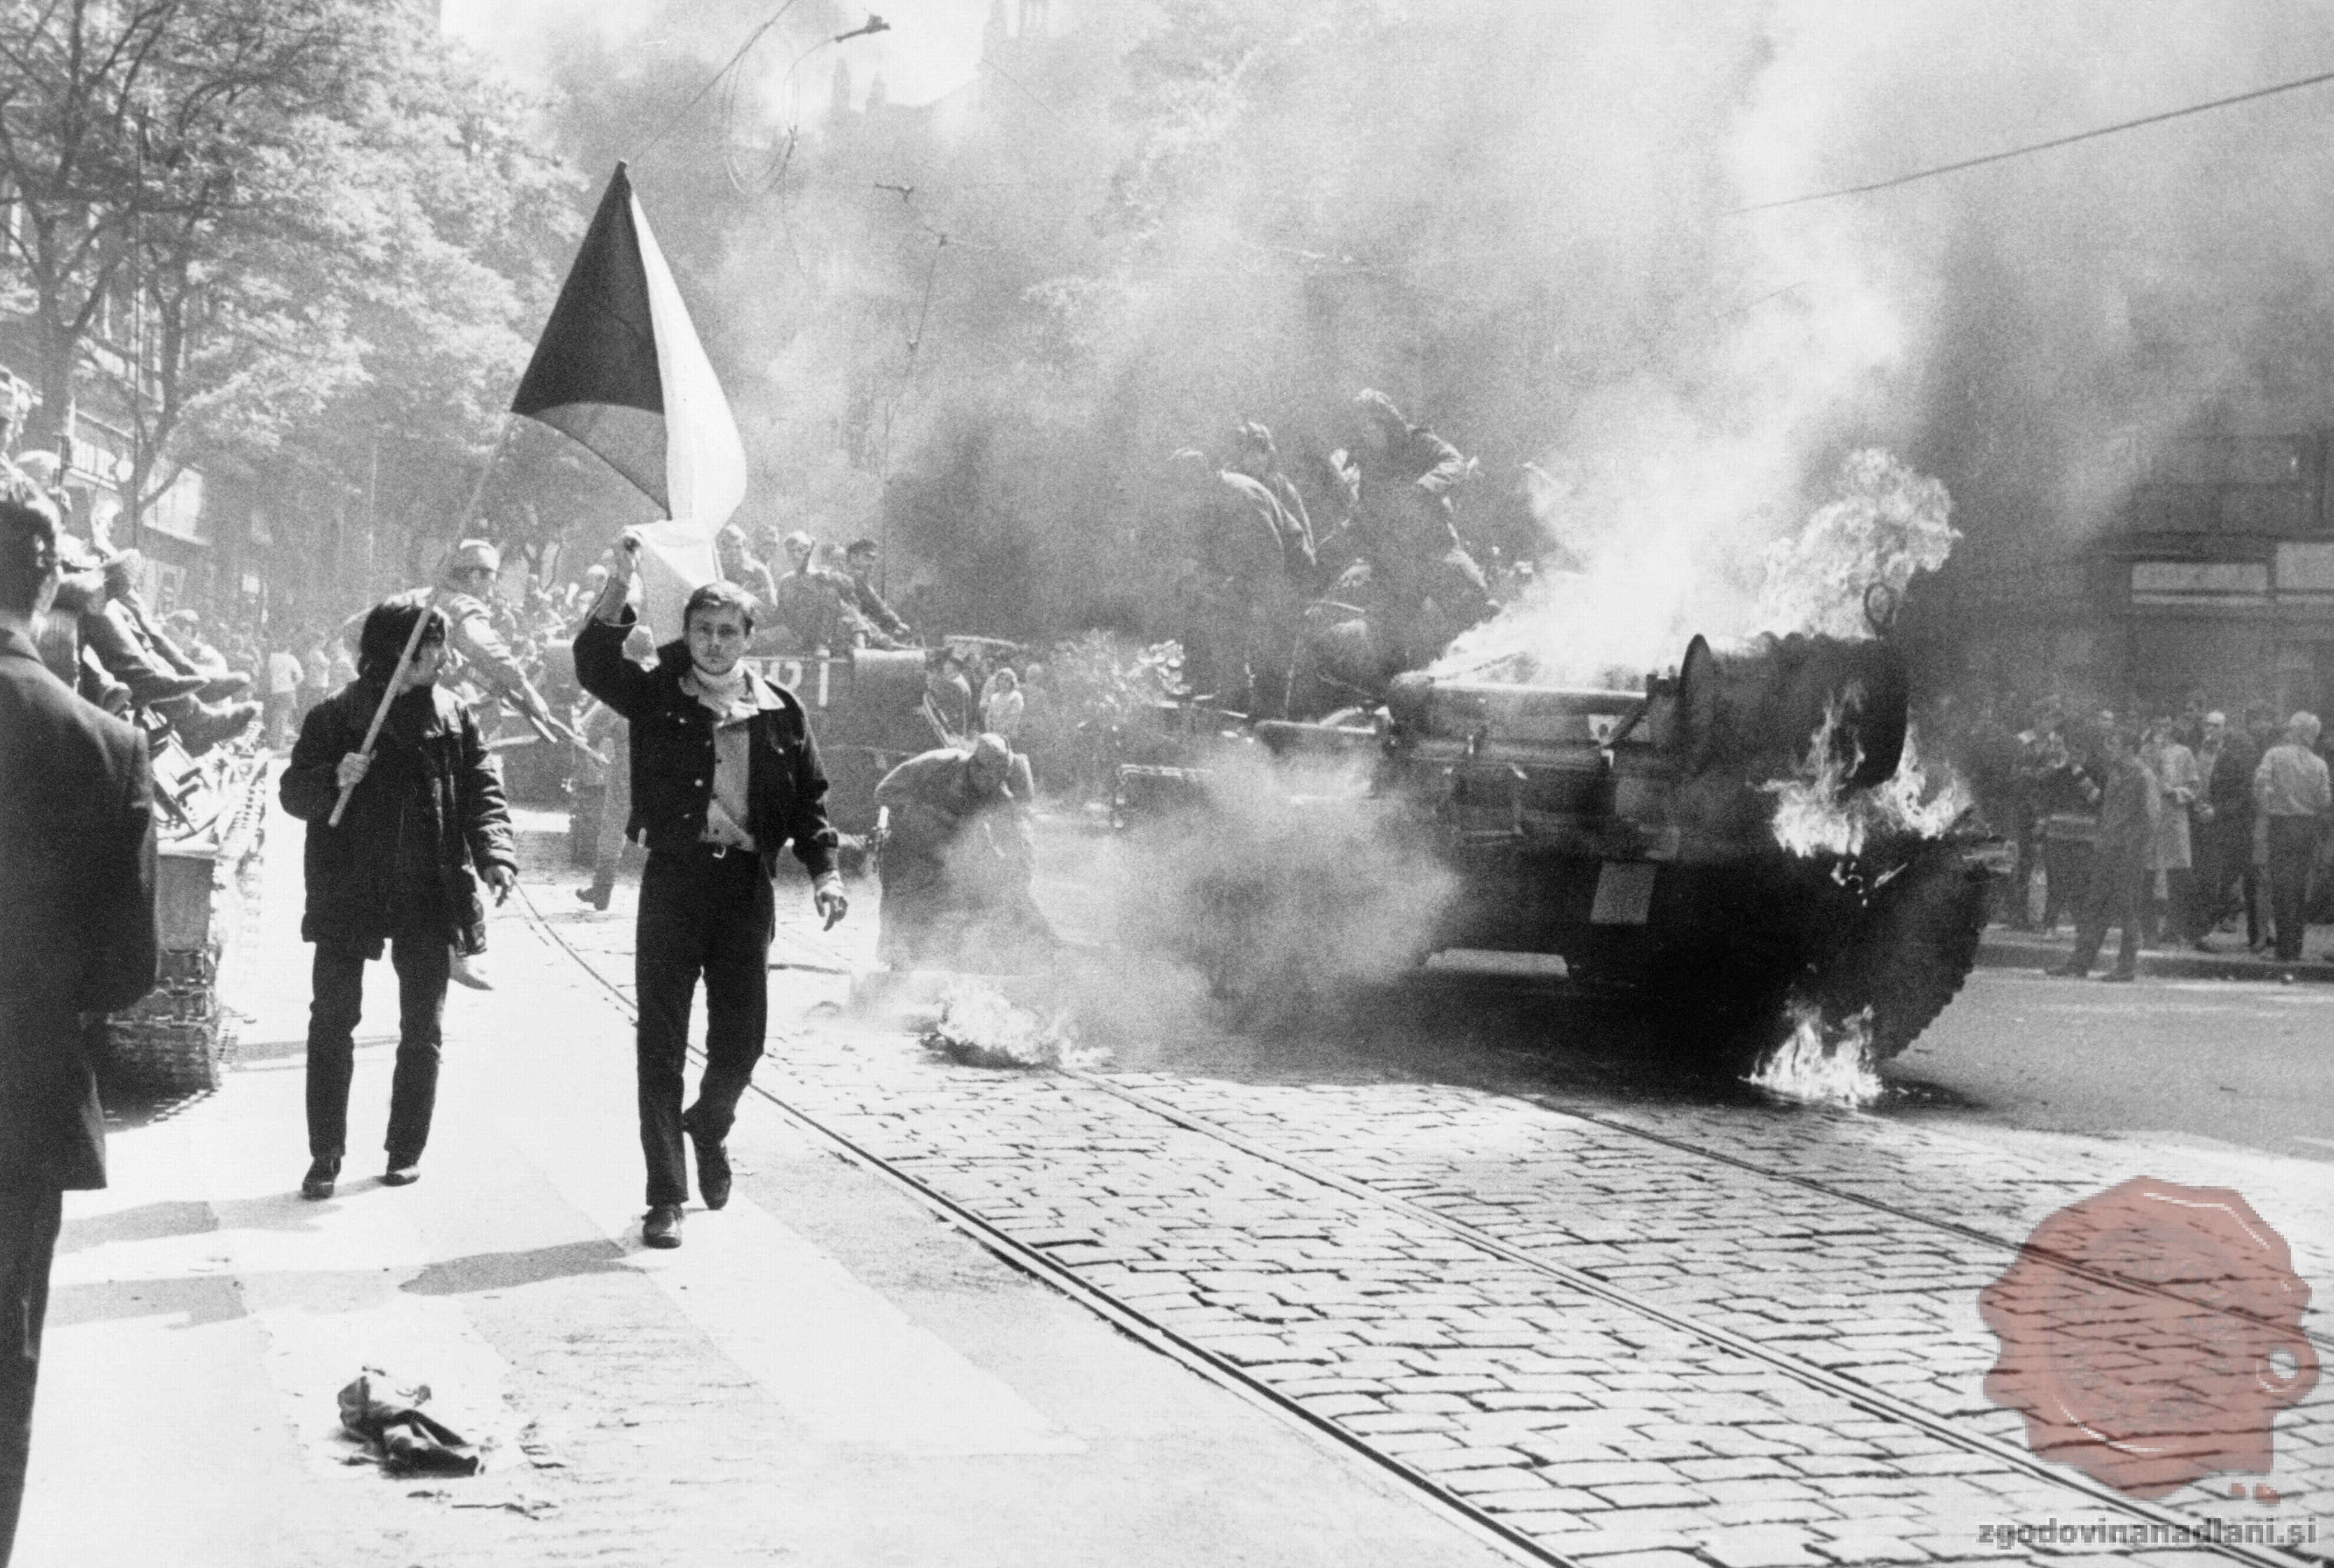 Intervencija Varšavskega pakta na Češkoslovaško. Foto: Wikipedia.